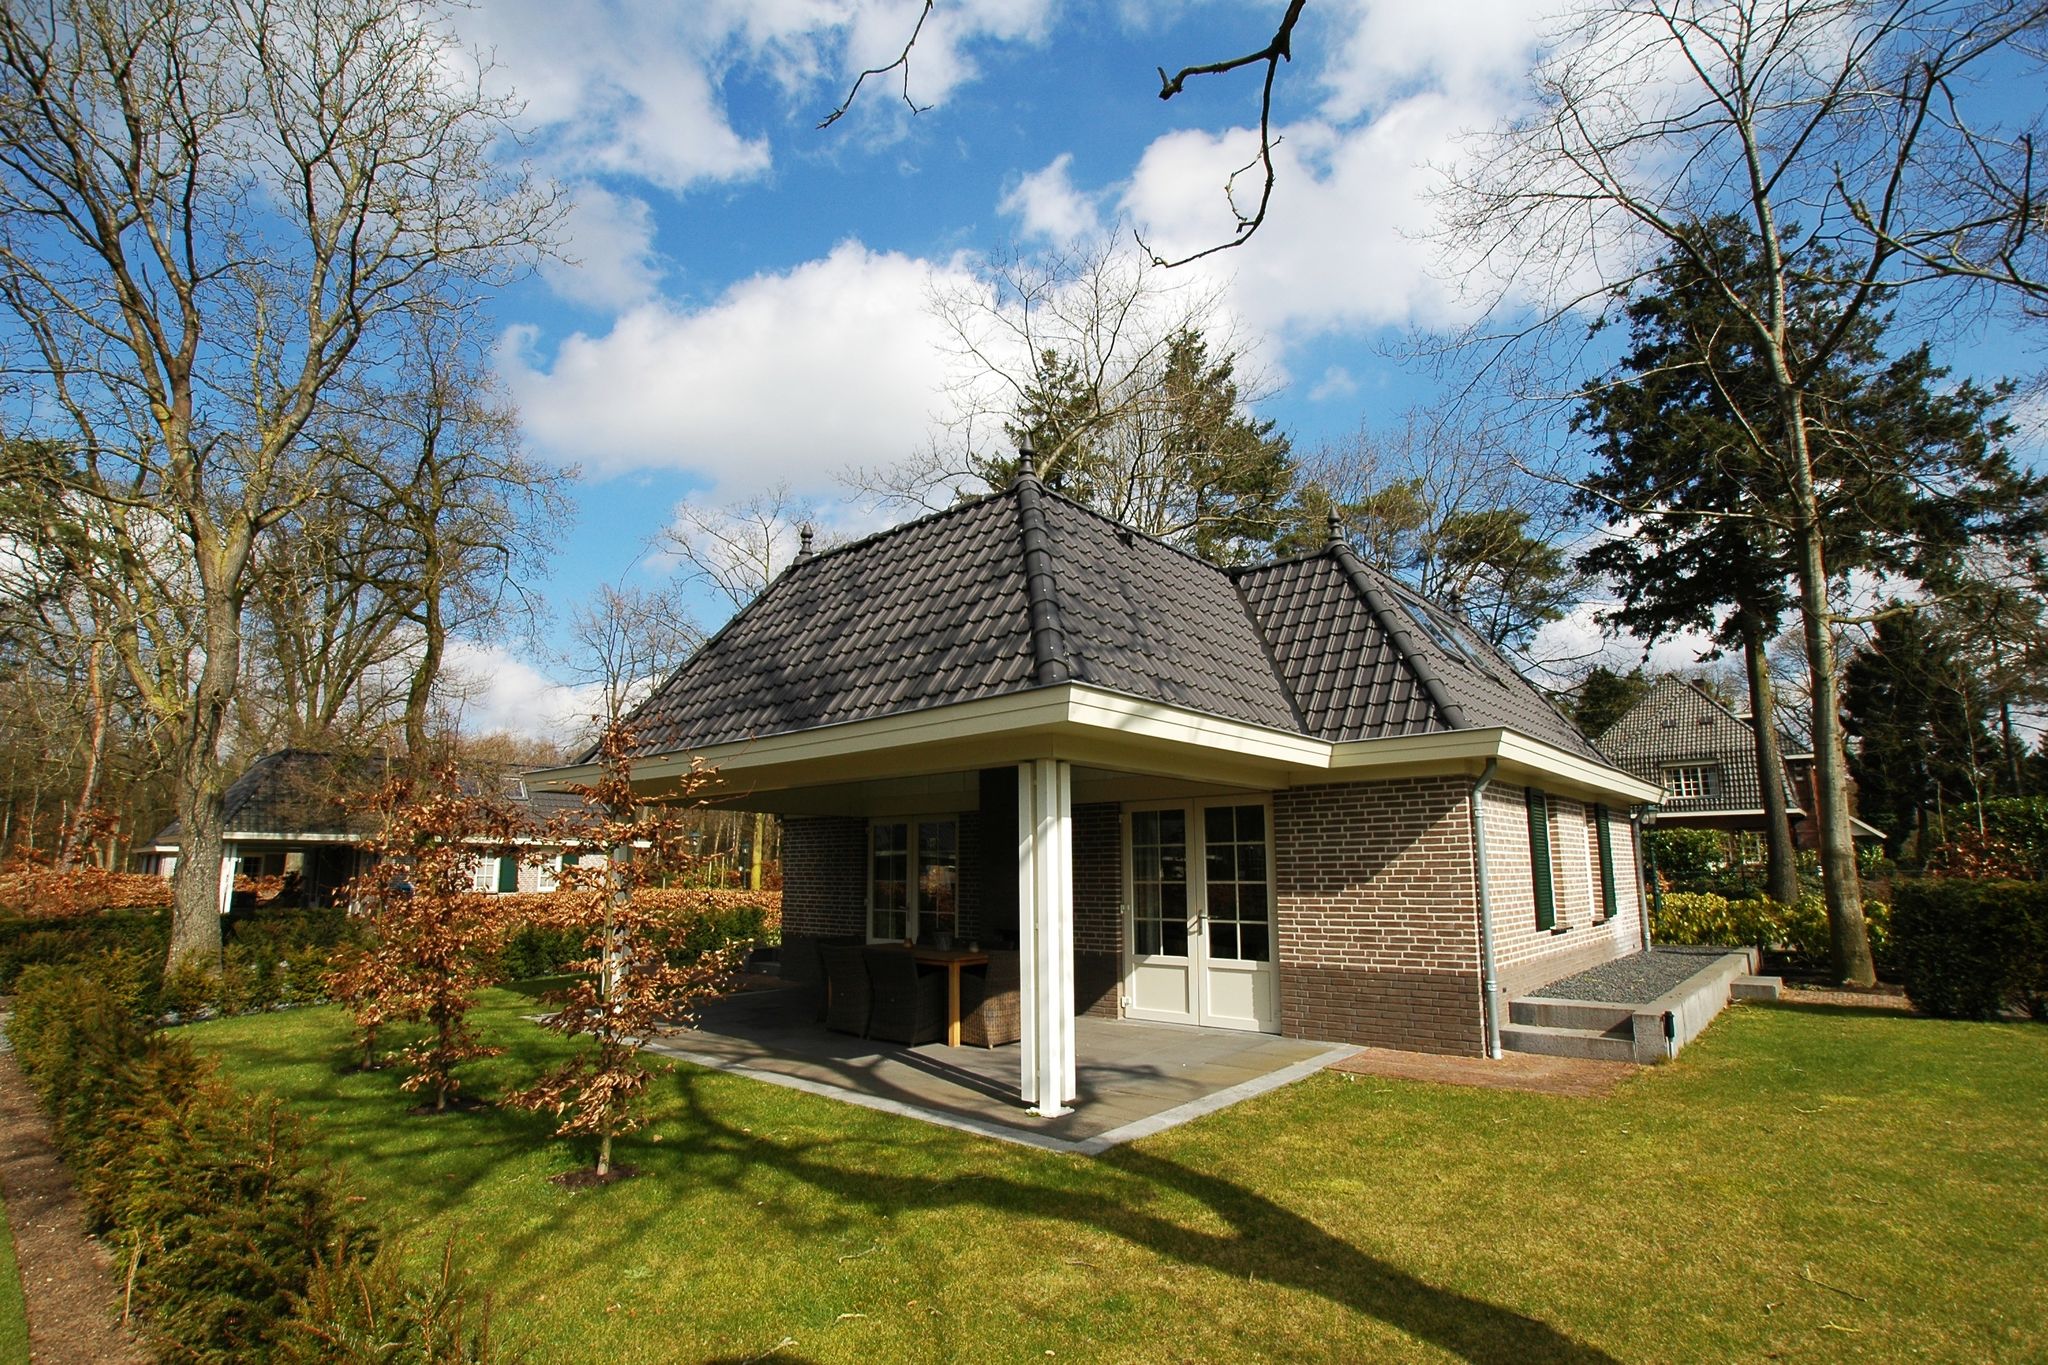 Villa avec cheminée extérieure près de la Veluwe